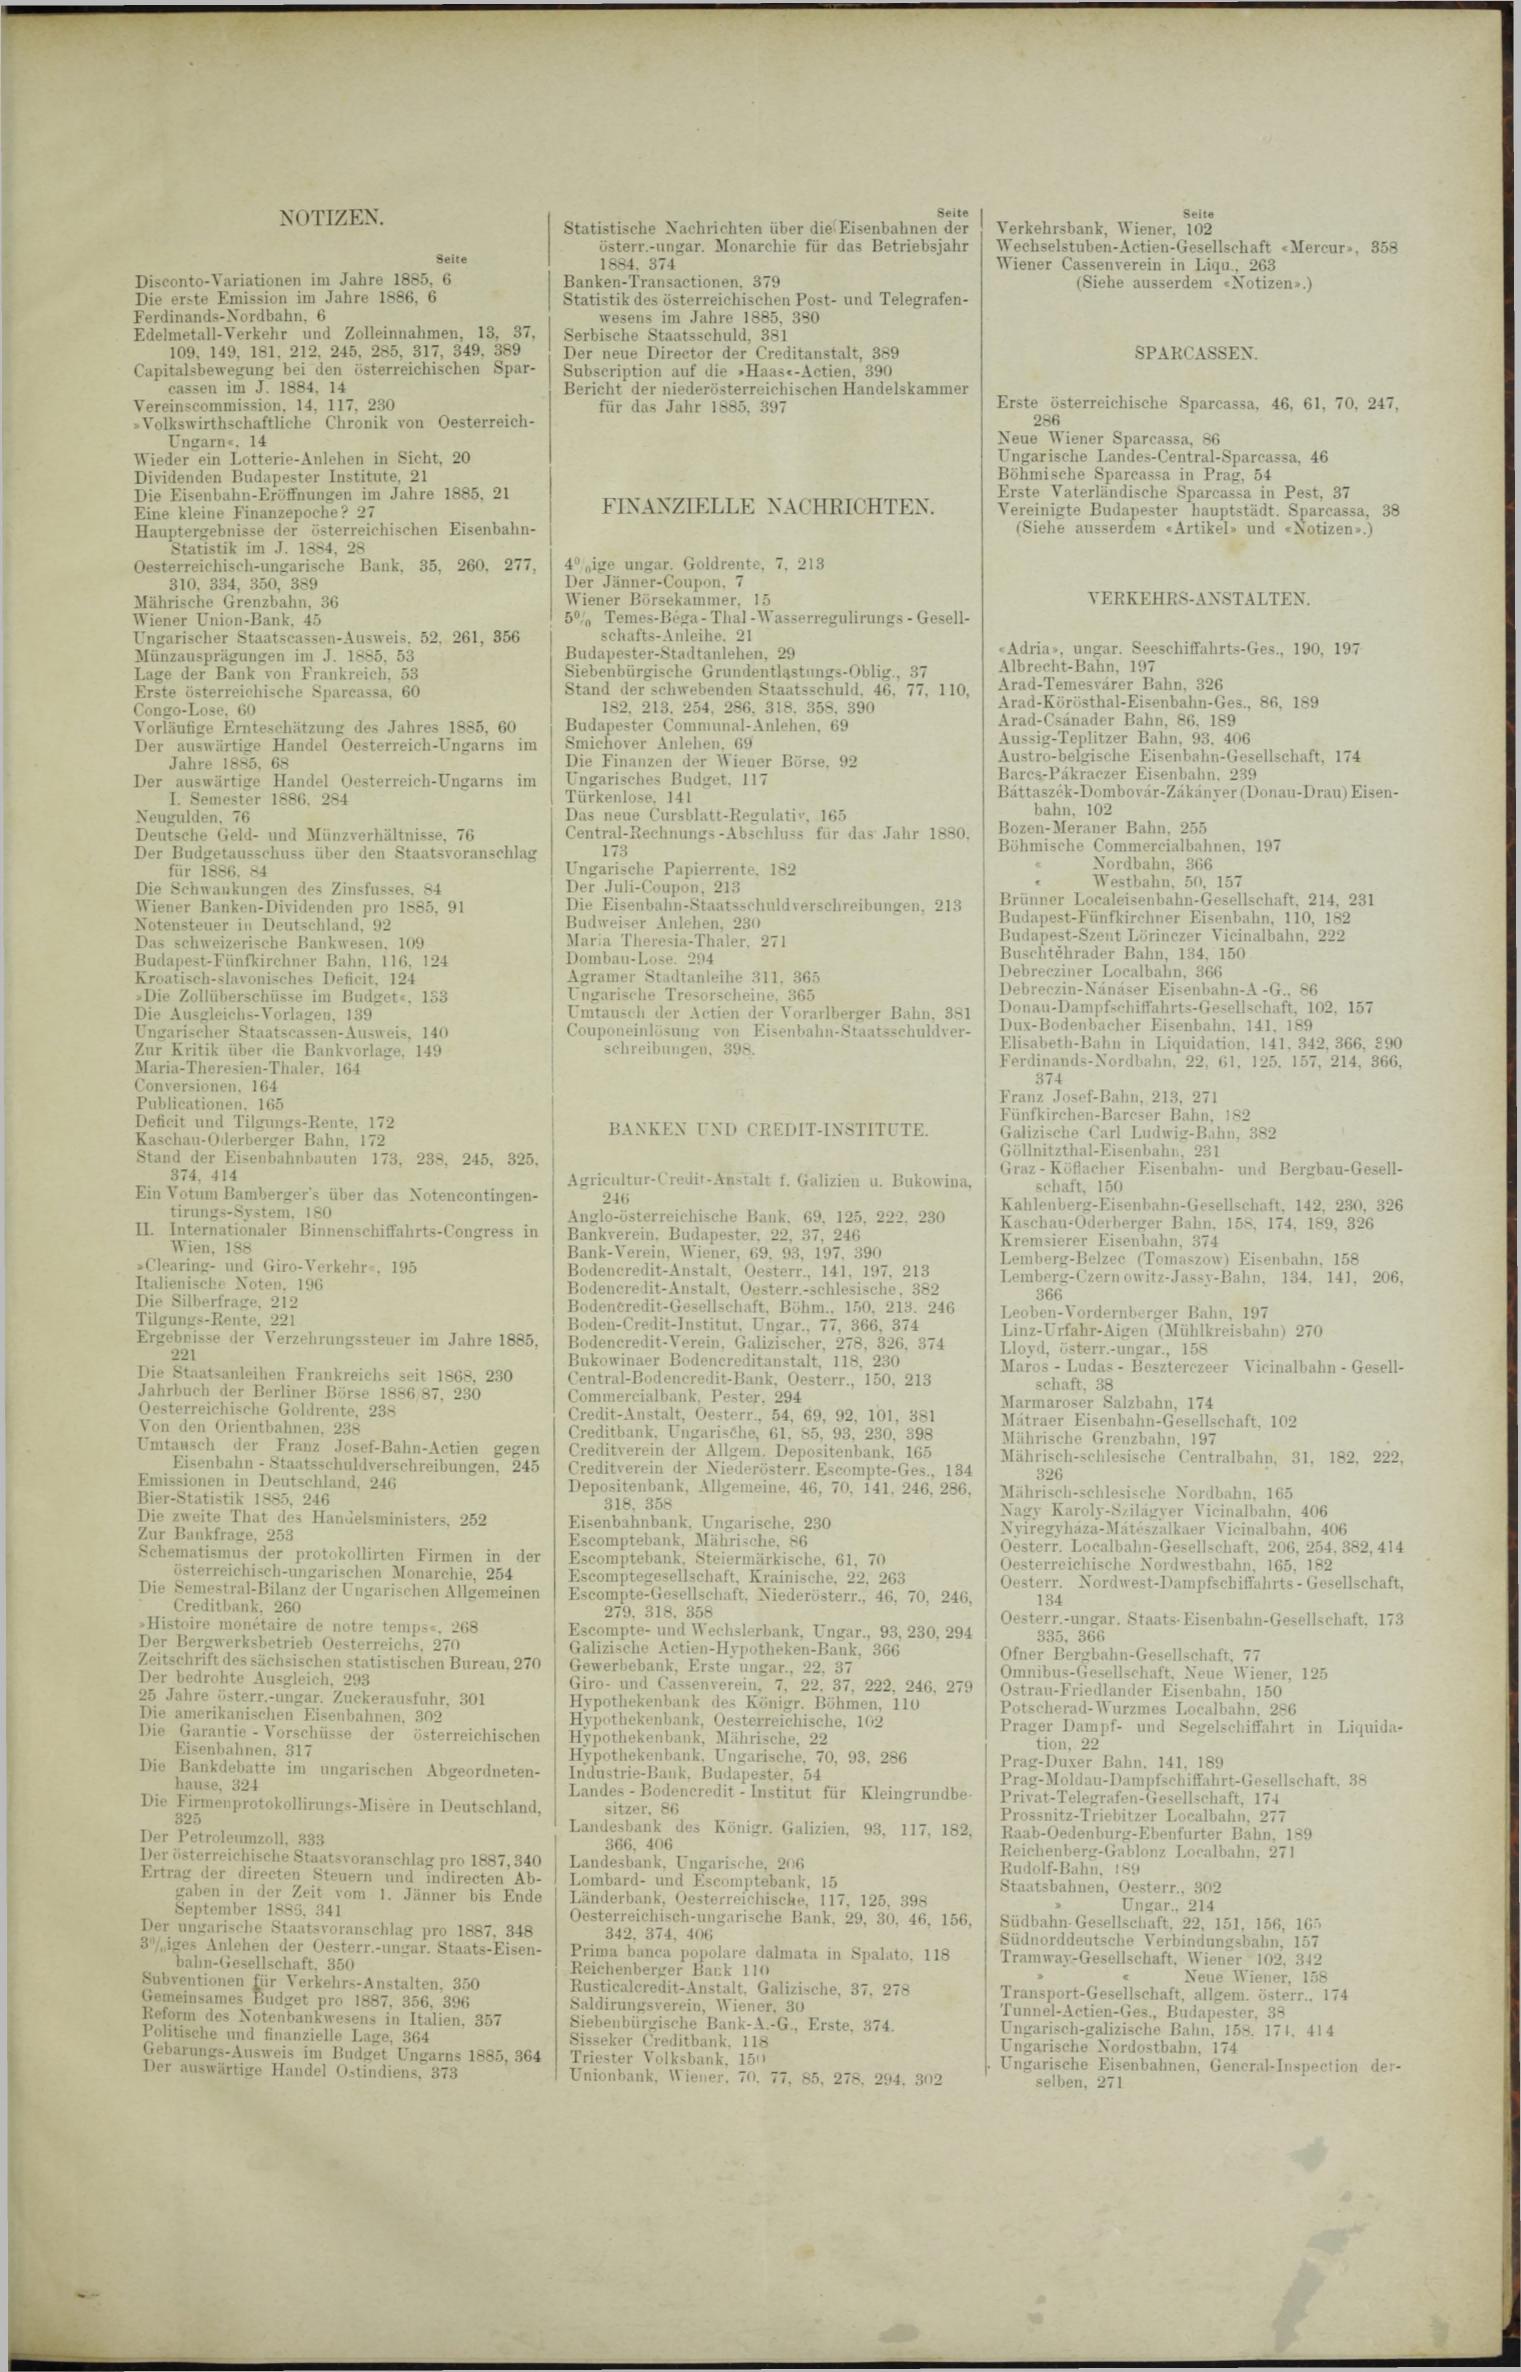 Der Tresor 02.12.1886 - Seite 11